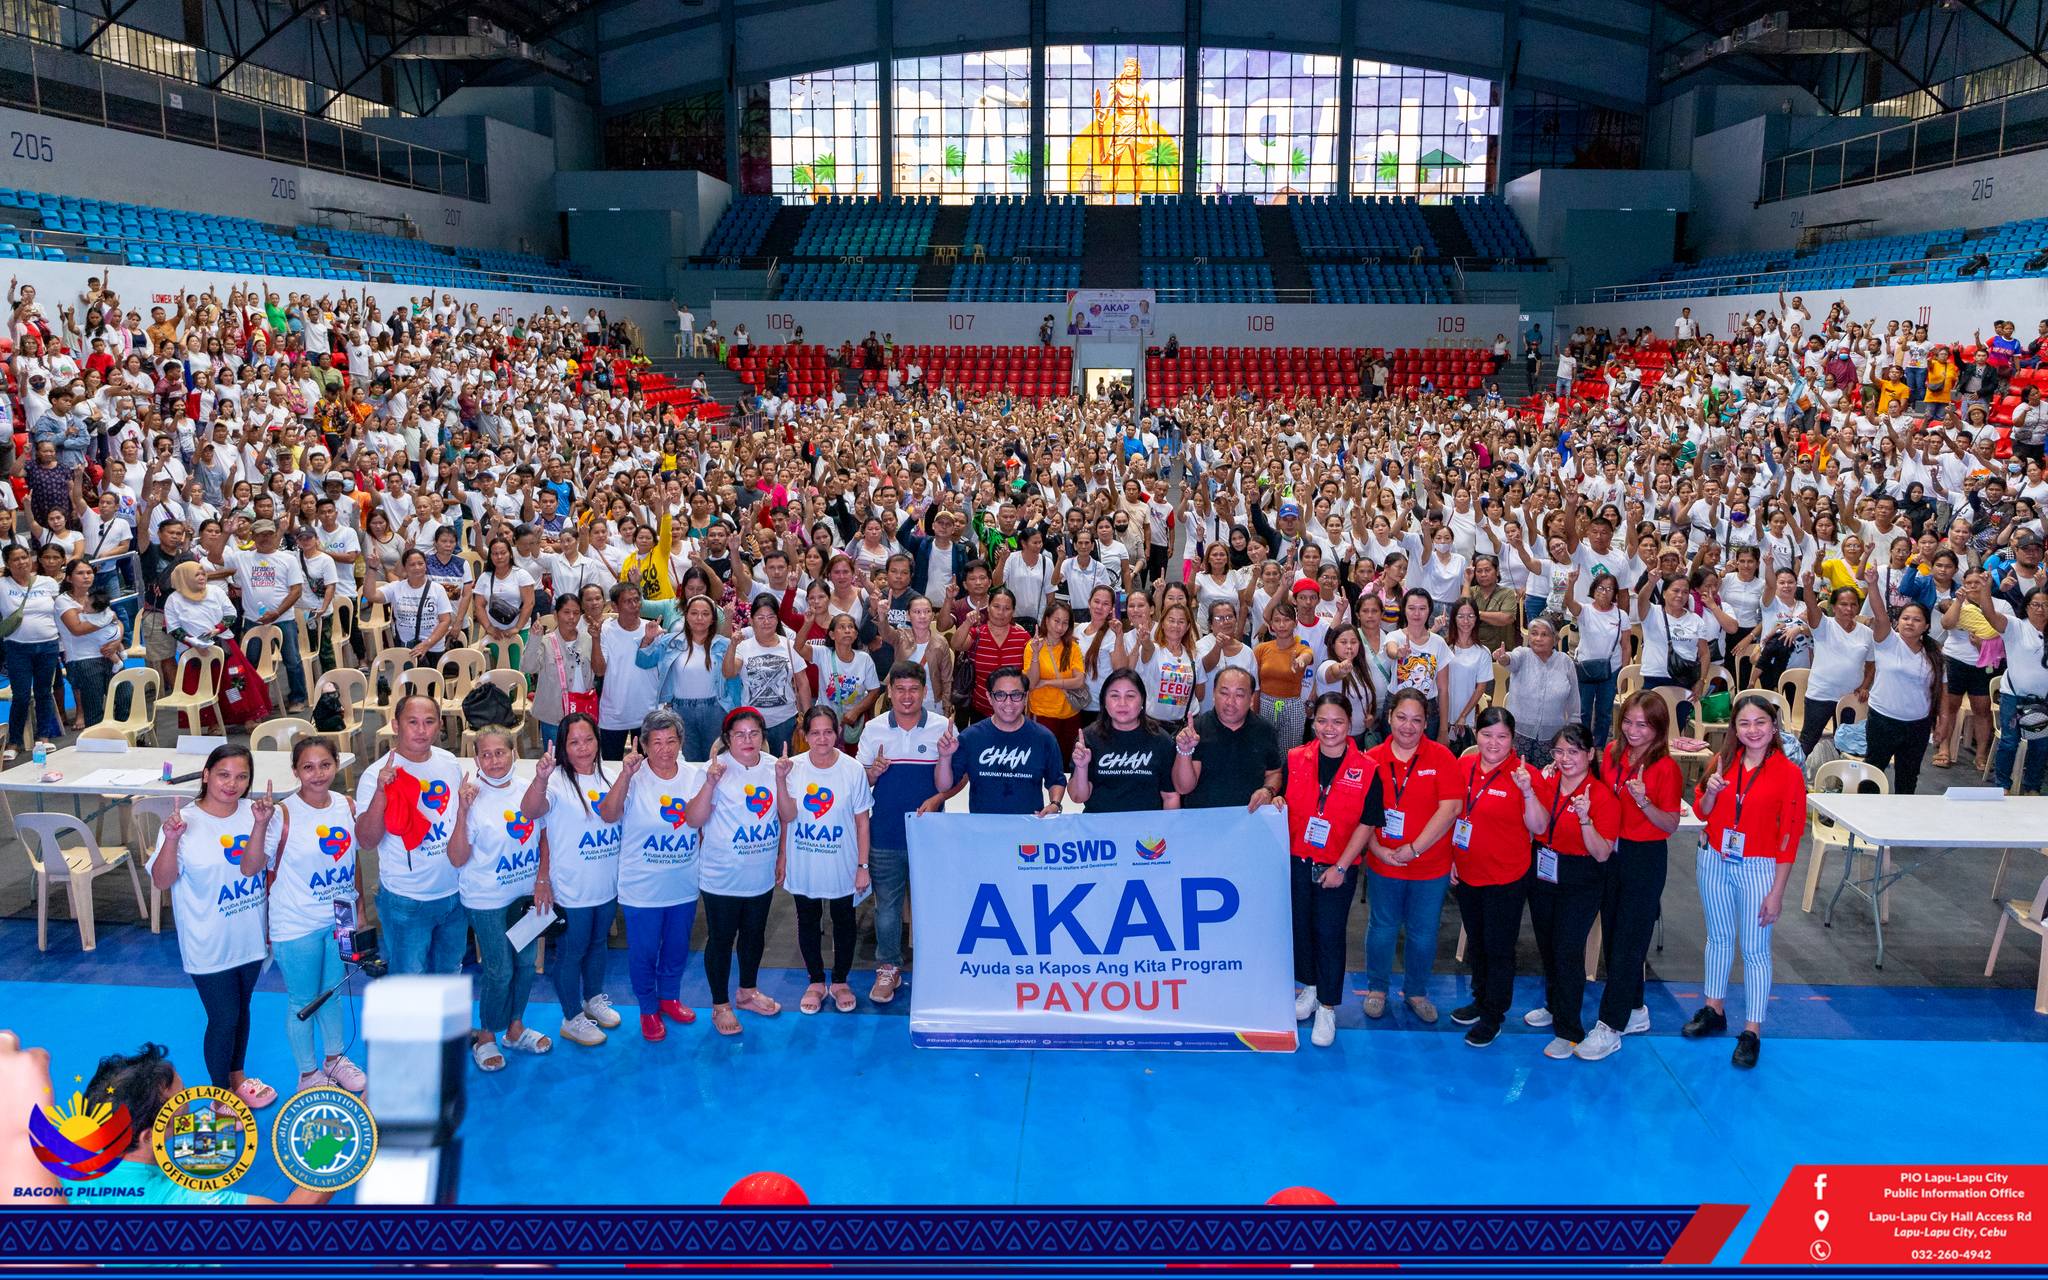 Image Posted for Distribution of payouts for the Ayuda para sa Kapos ang Kita Program (AKAP)